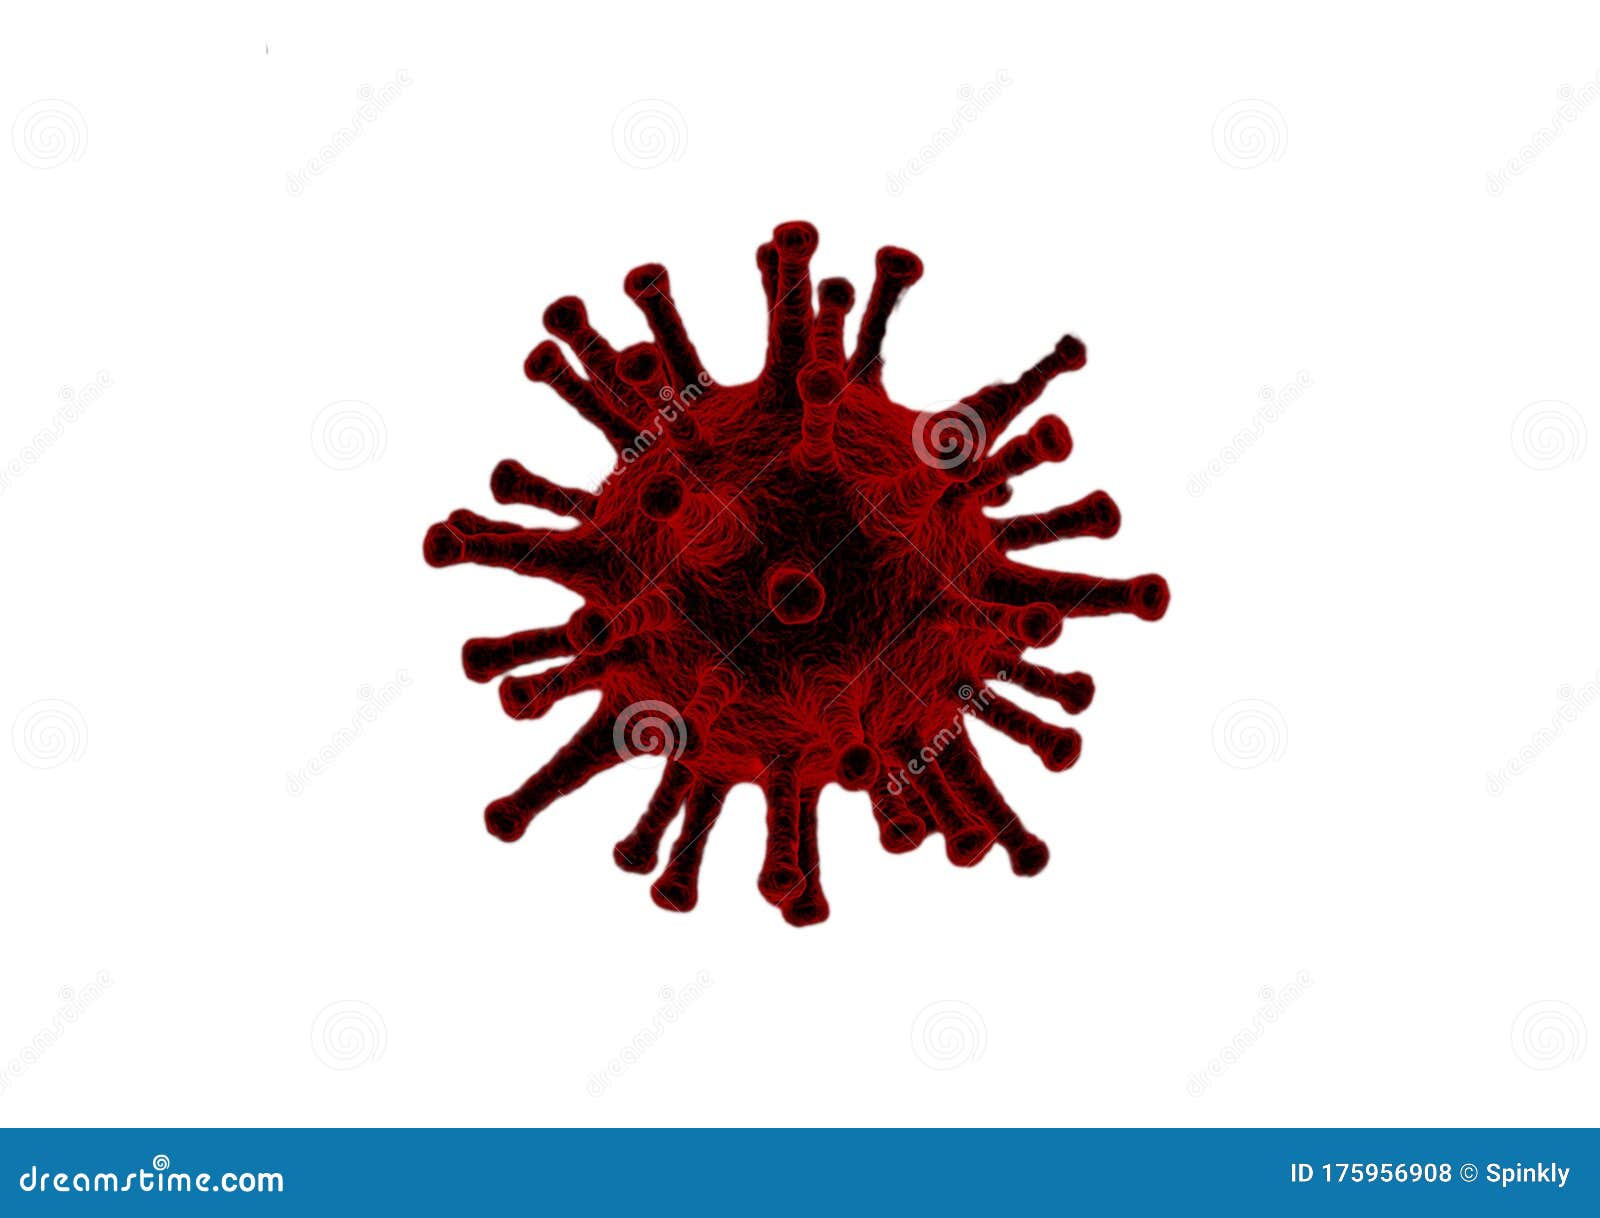 corona virus image on white background